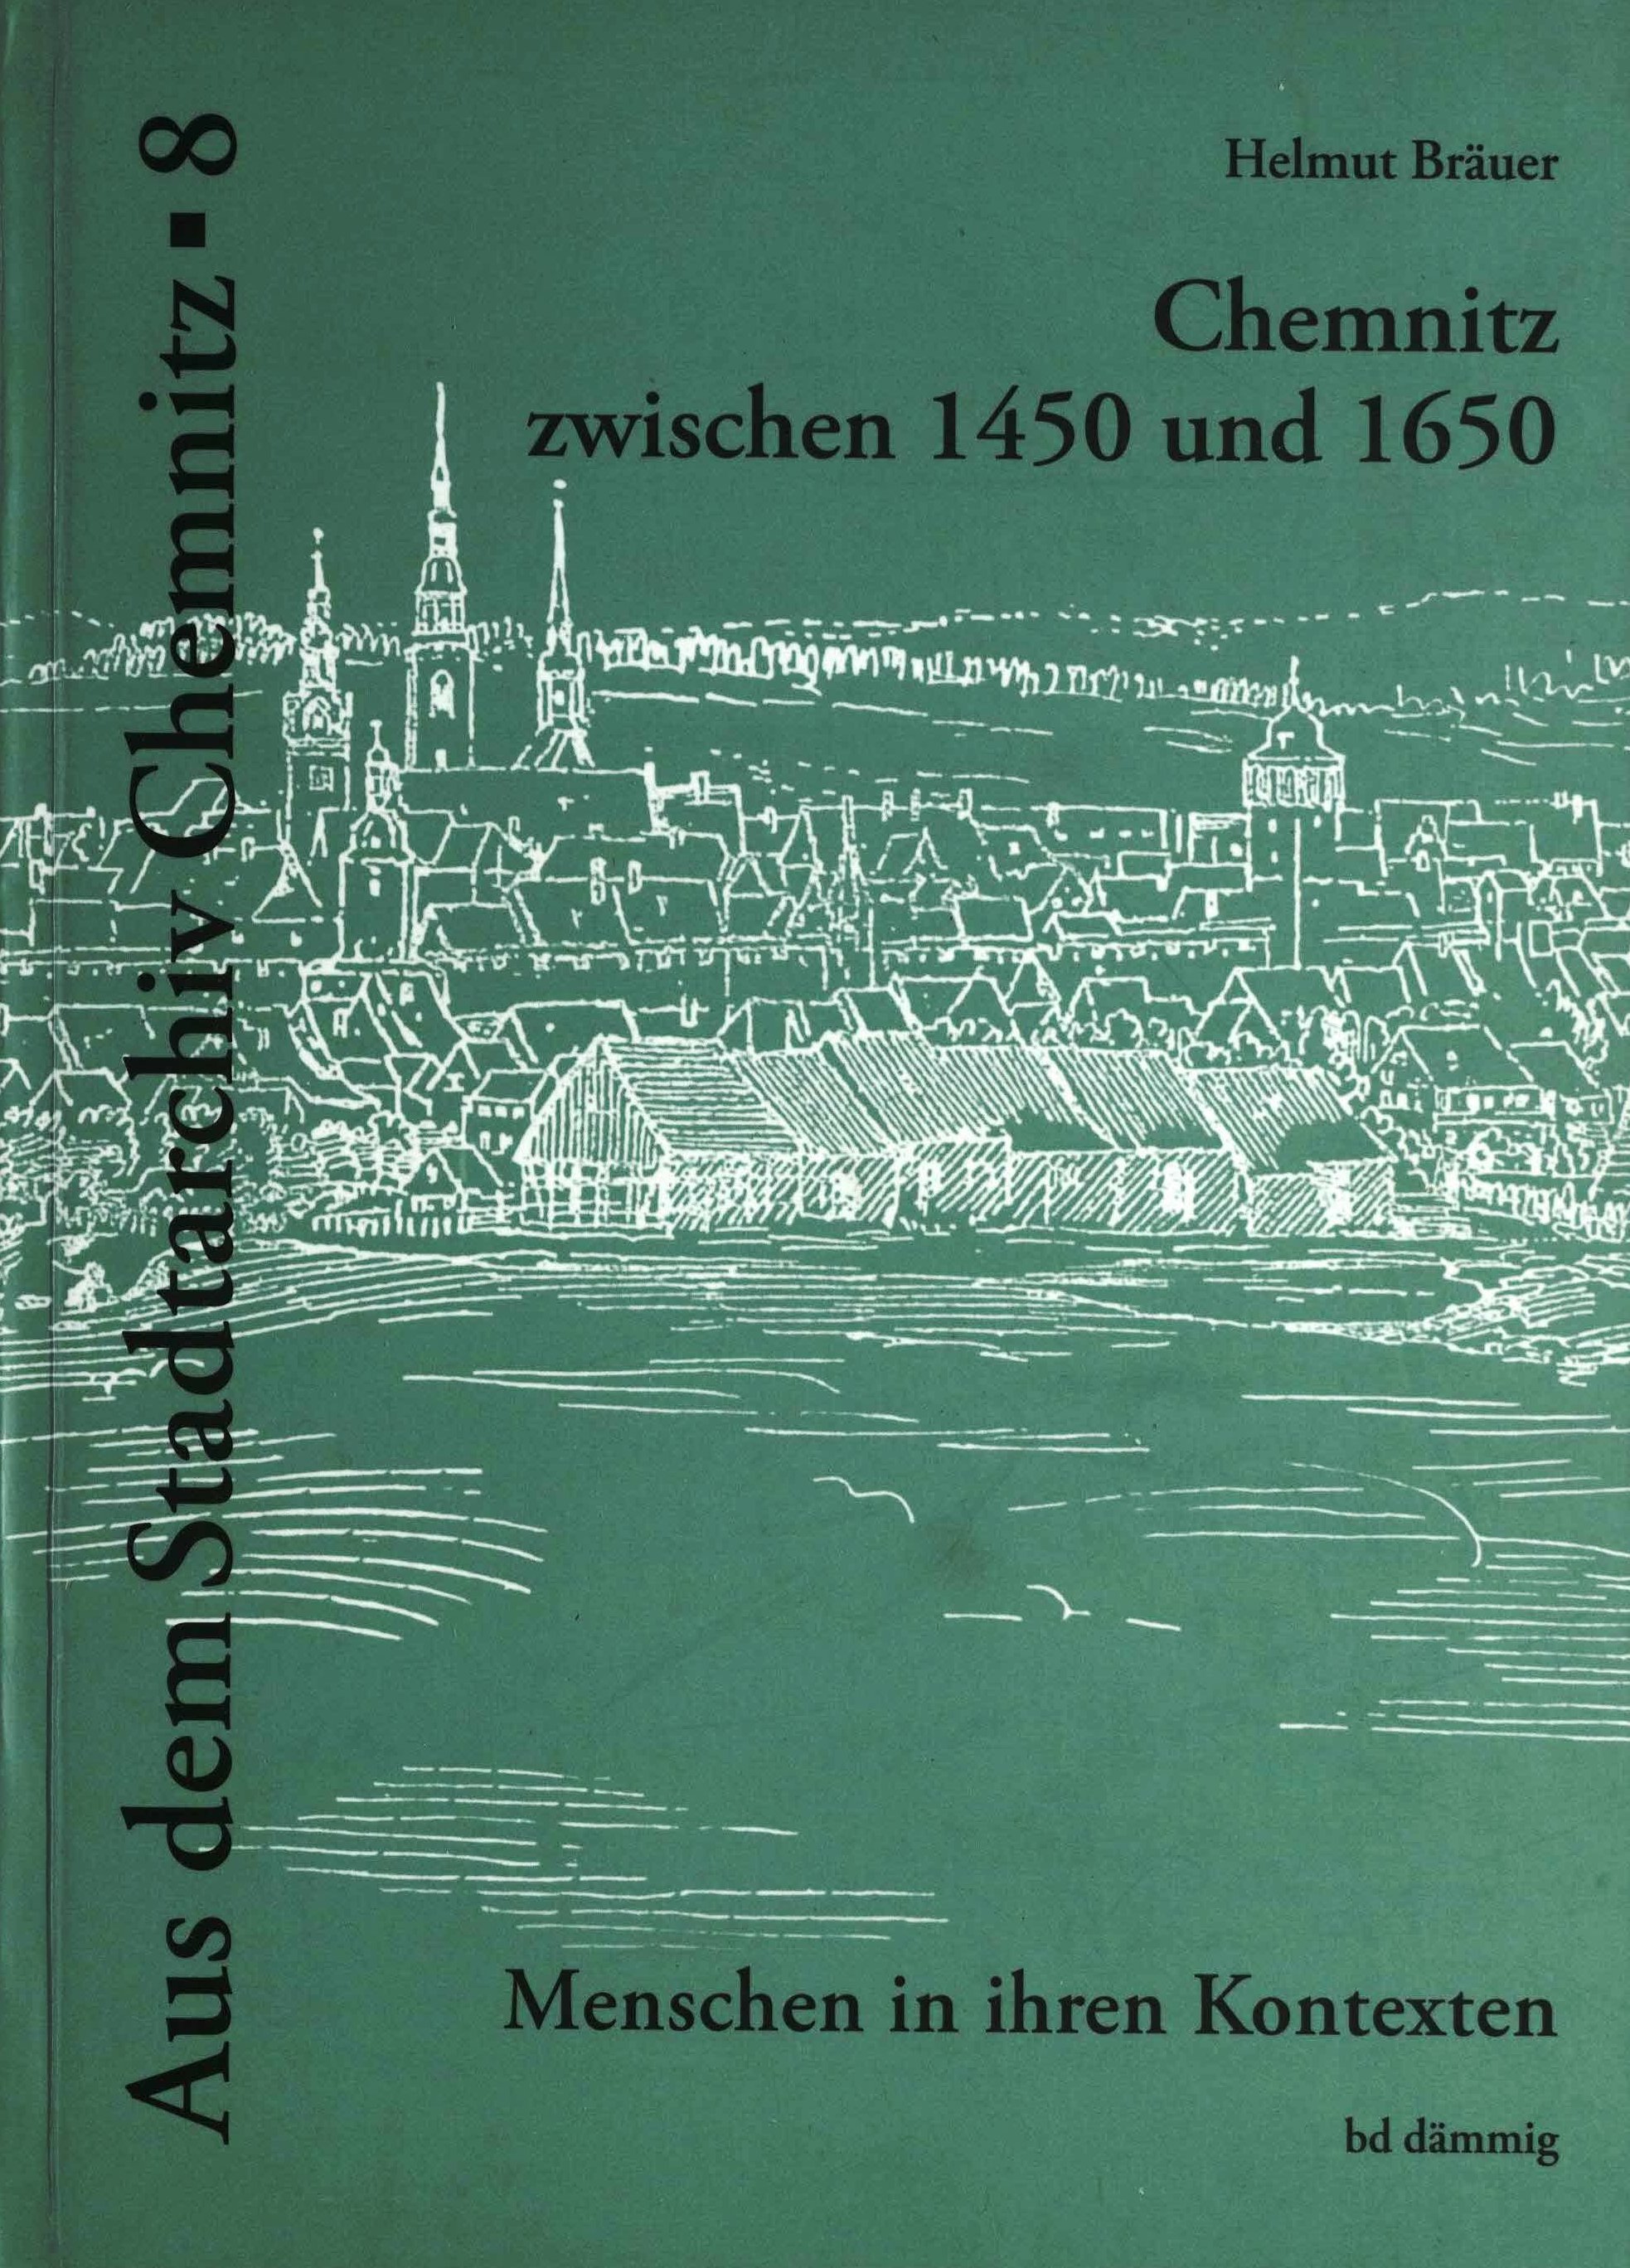 Chemnitz zwischen 1450 und 1650 - Menschen in ihren Kontexten